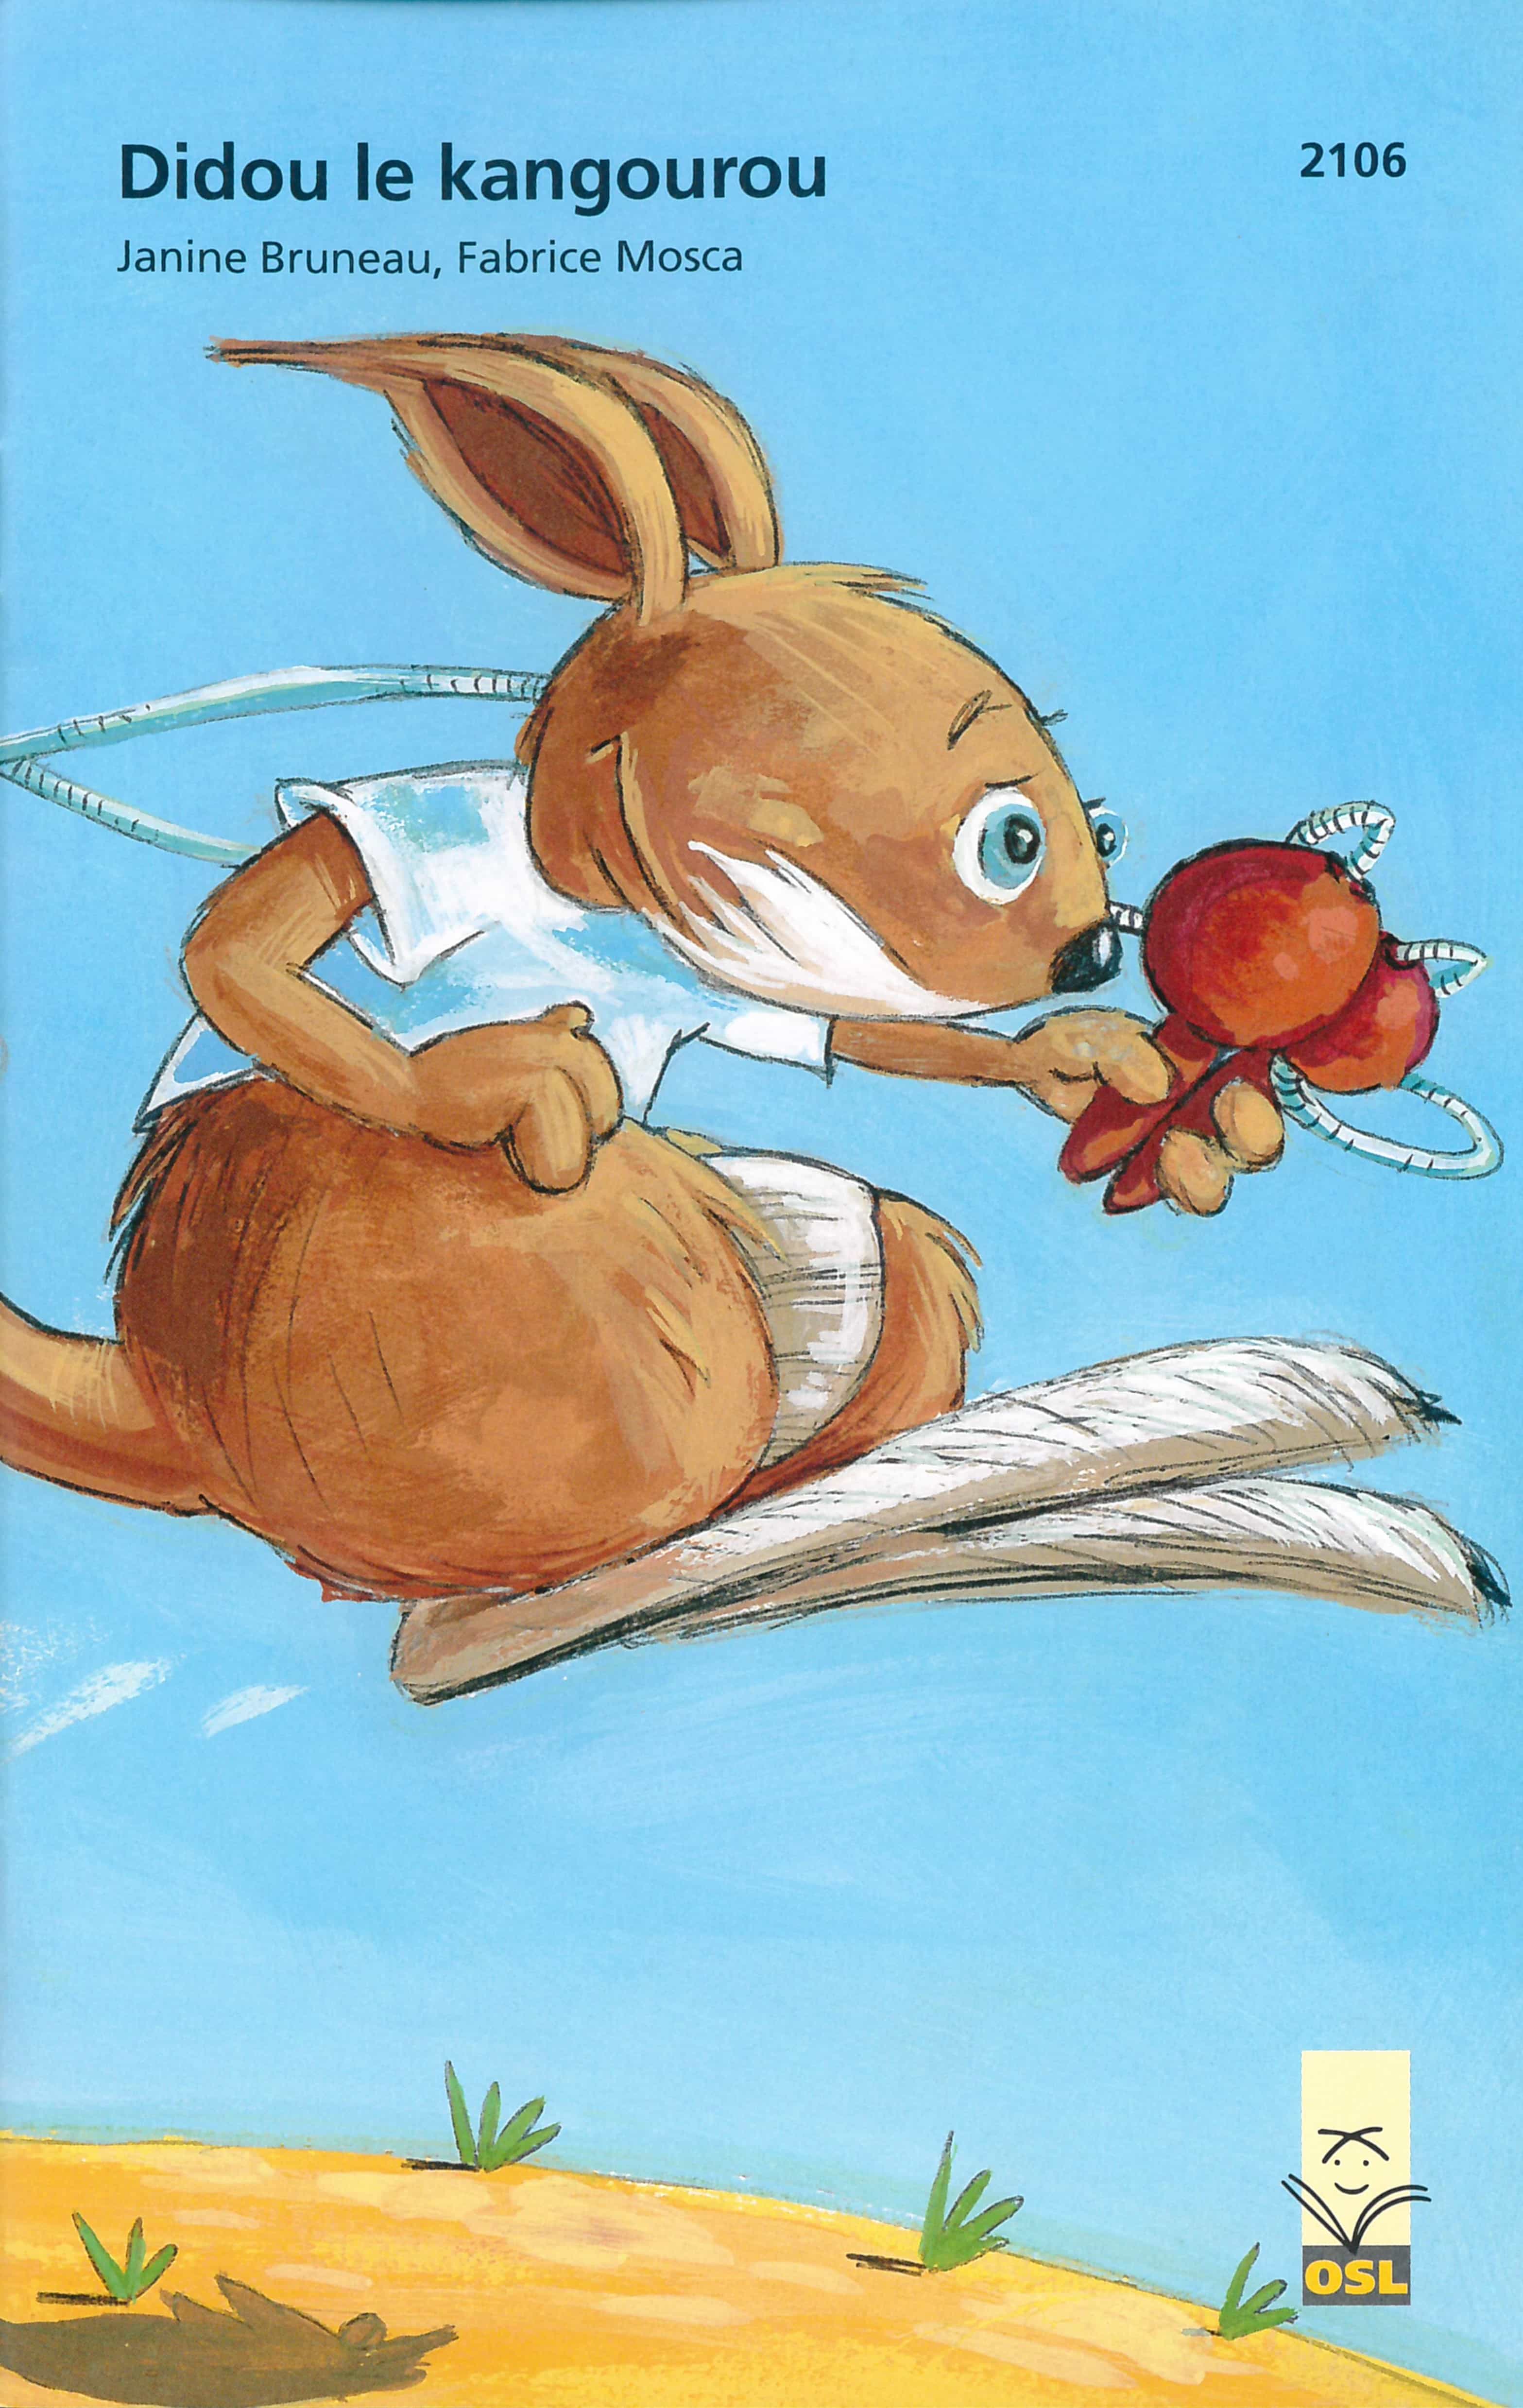 Didou le kangourou, un livre pour enfants de Bruneau Janine, illustré par Mosca Fabrice, éditions de l'OSL, aventure scolaire